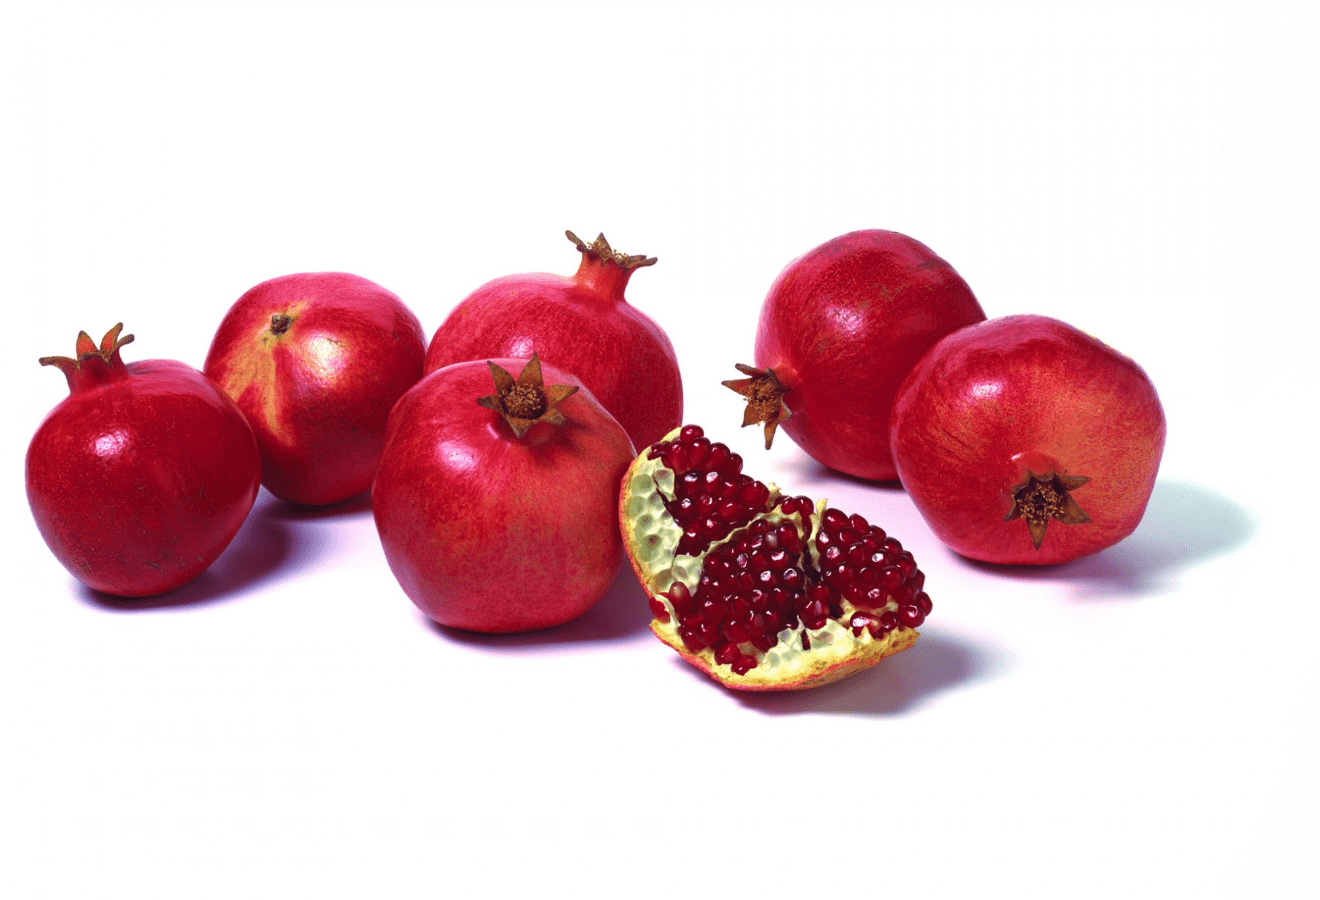 UZB pomegranate